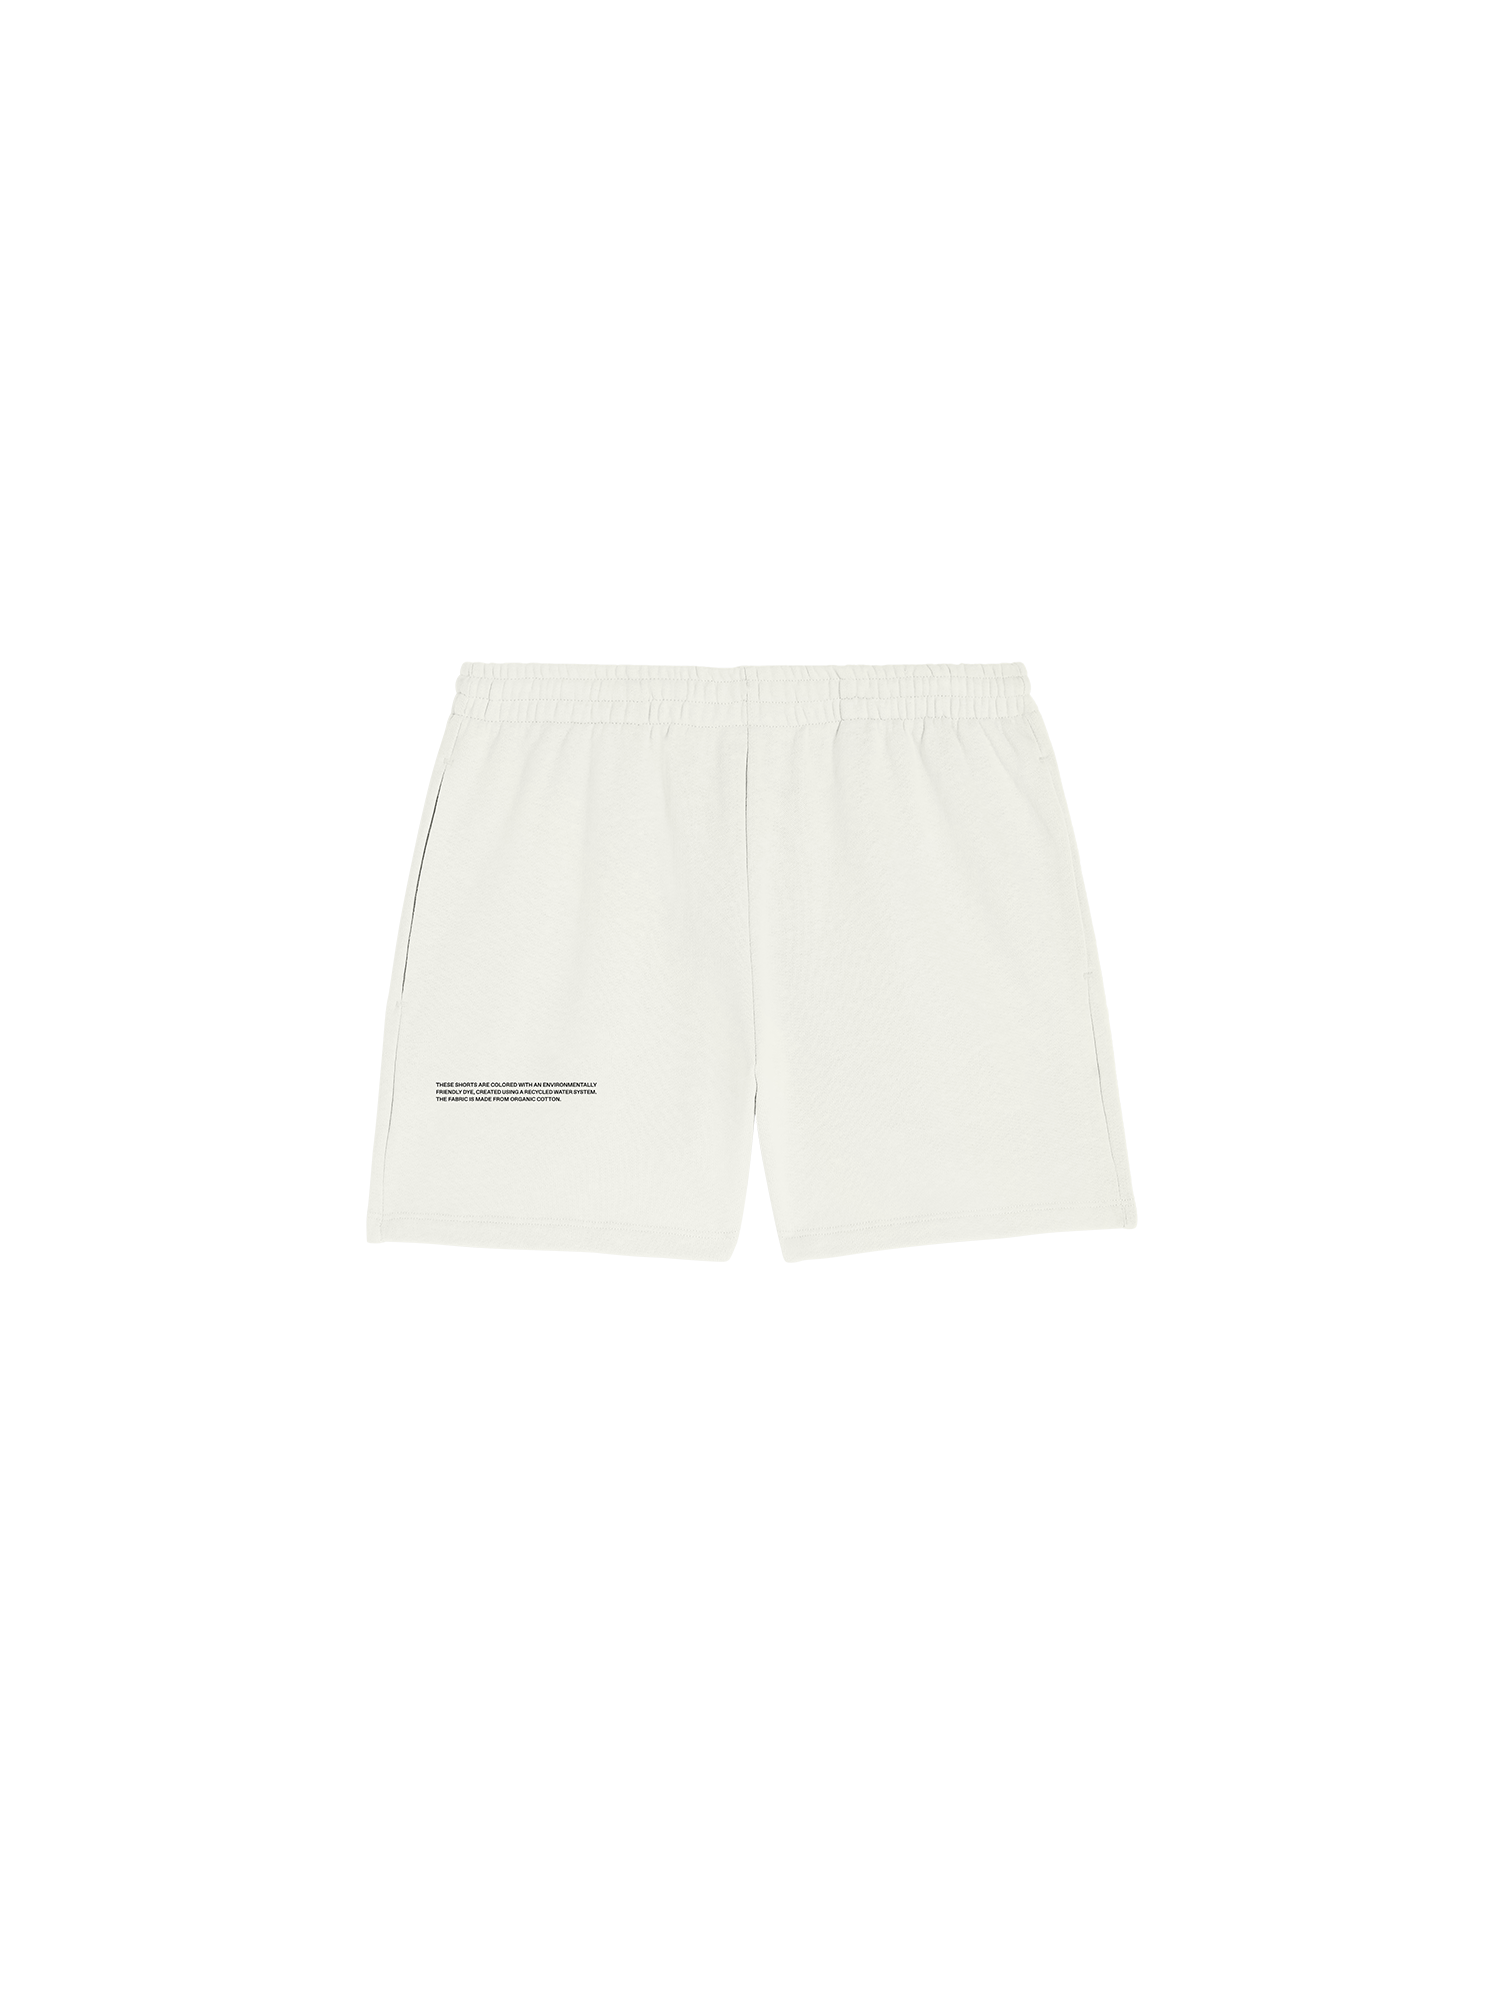 365 Shorts-packshot-3